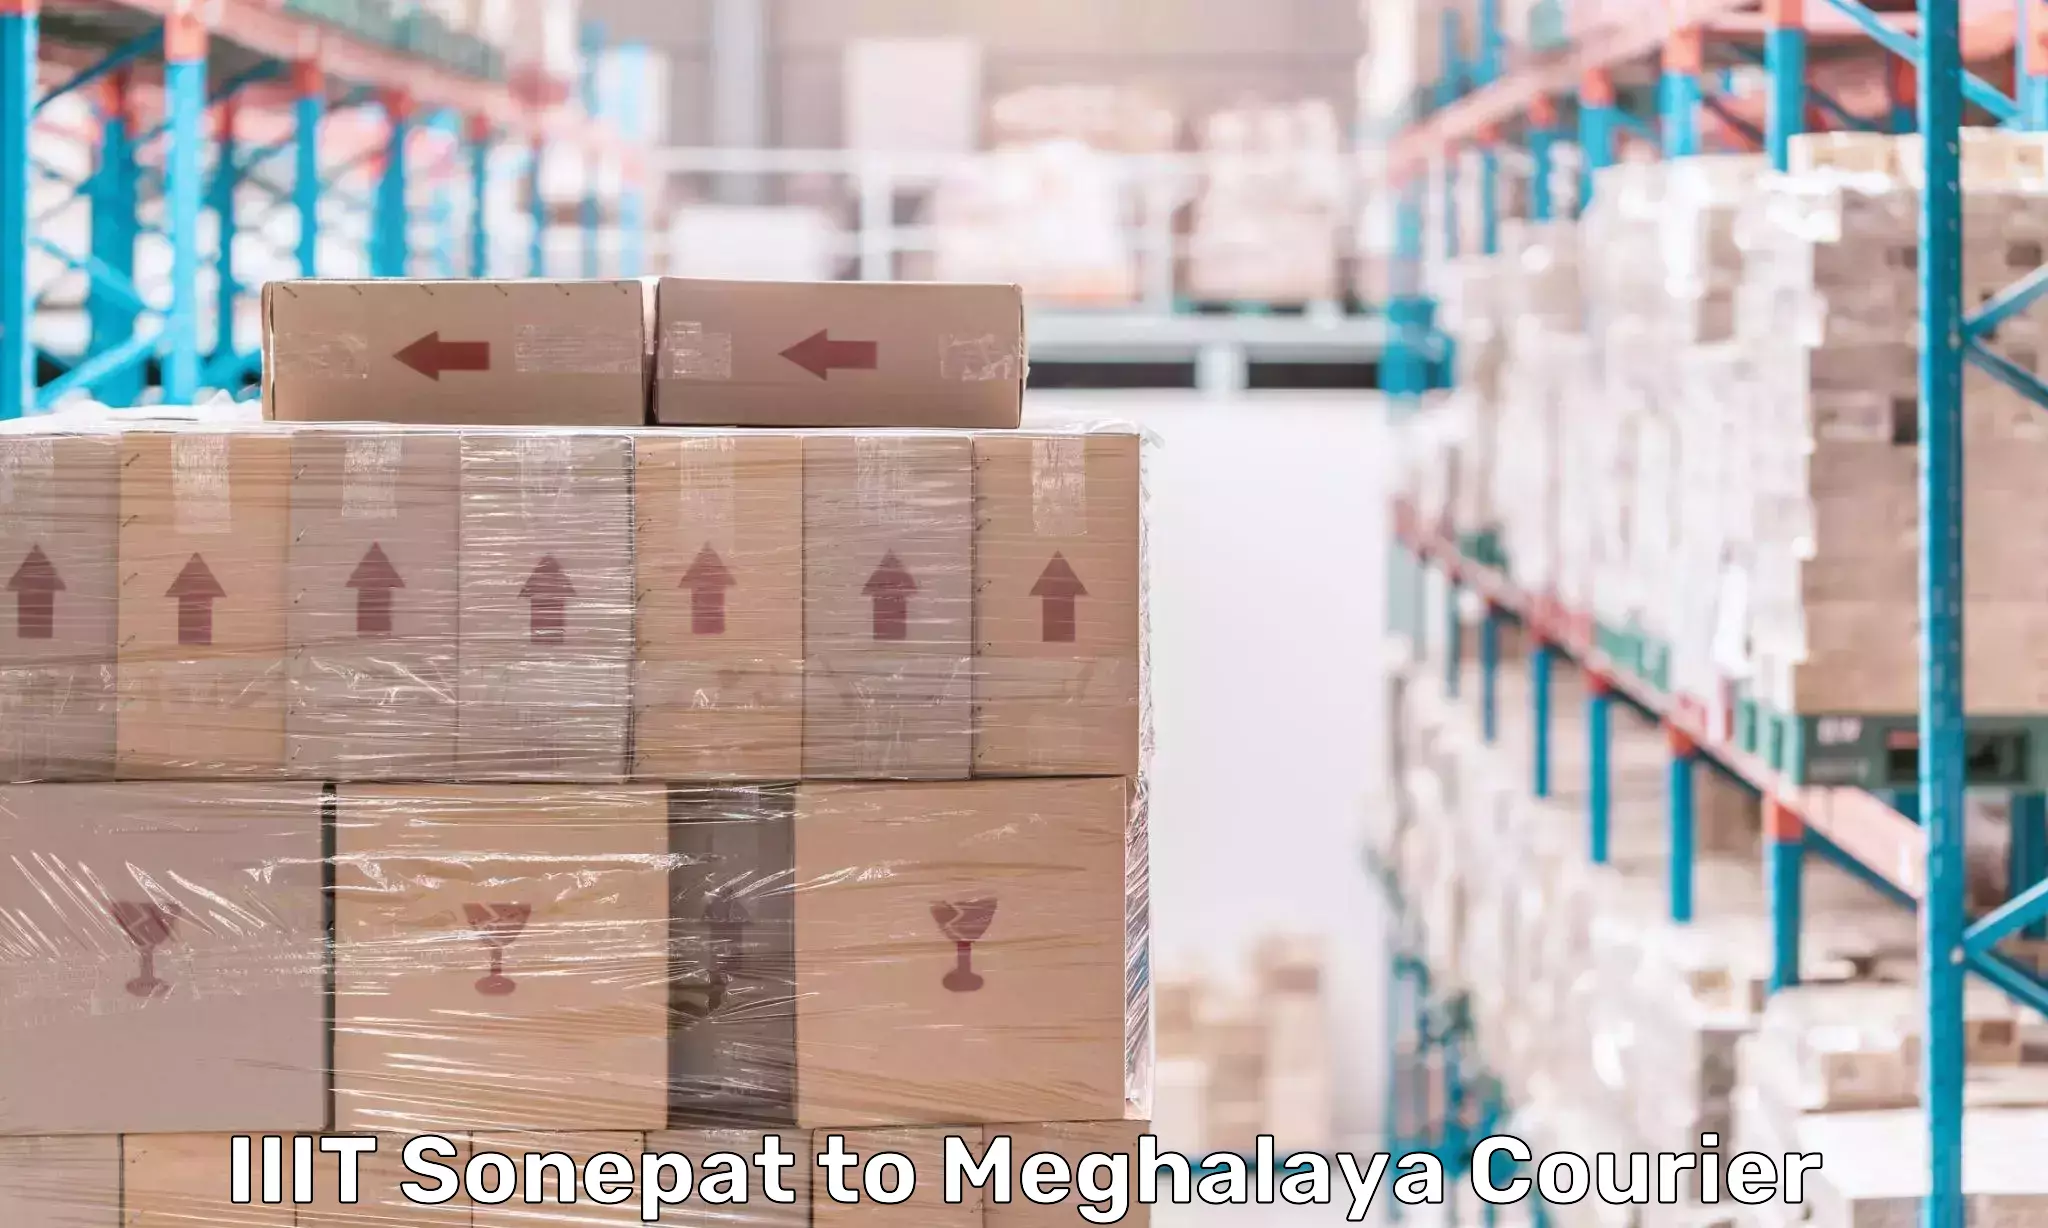 High-priority parcel service IIIT Sonepat to Meghalaya